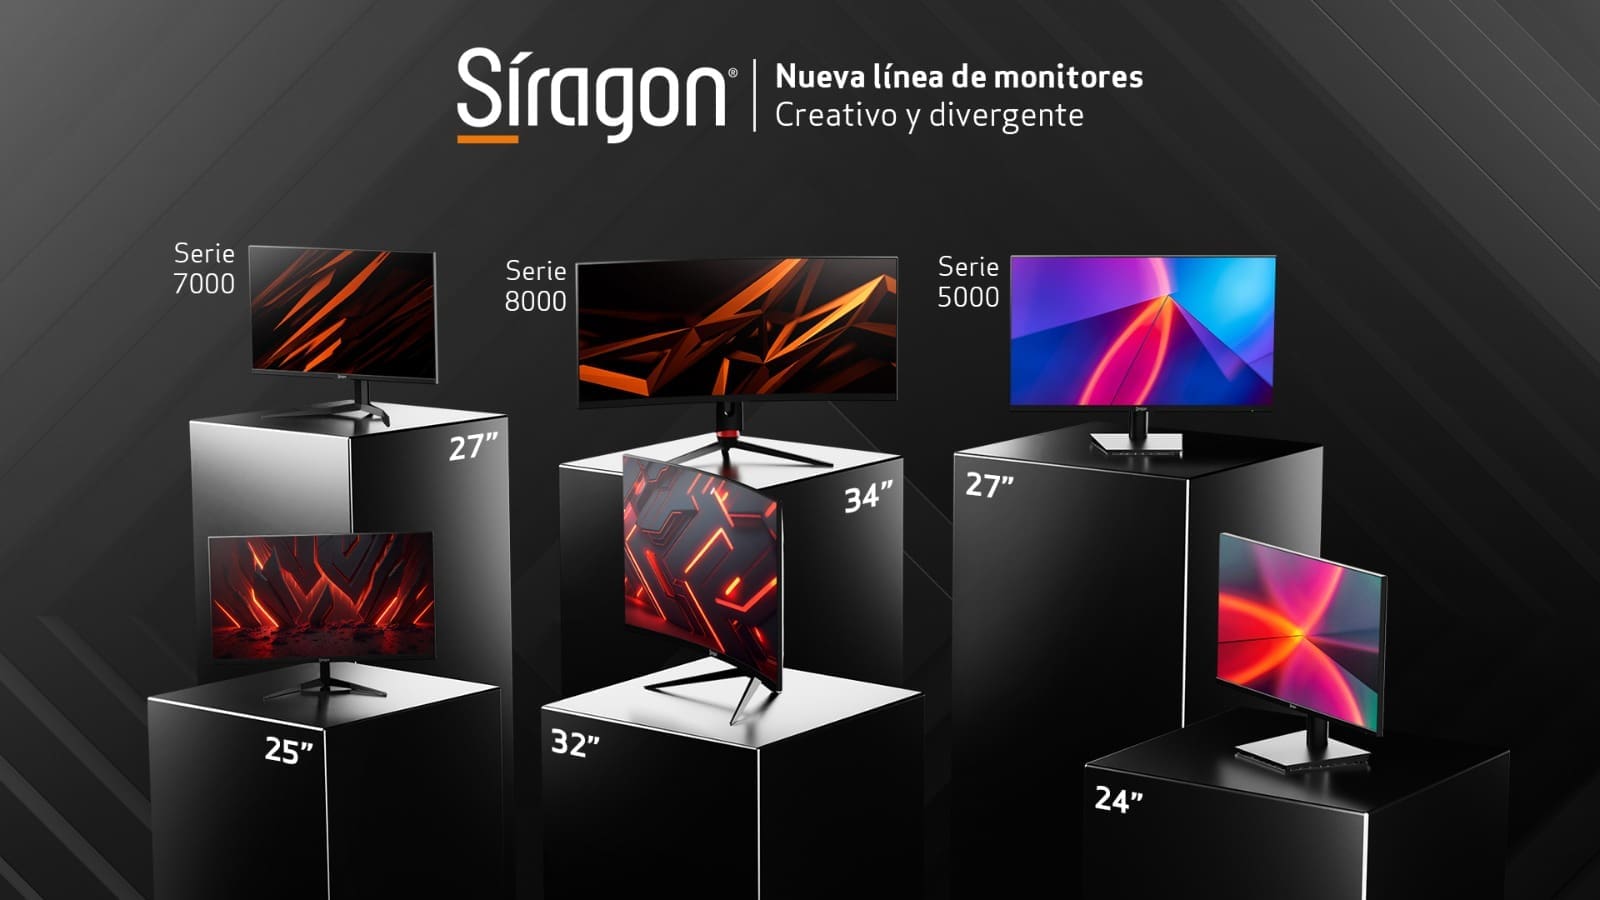 Síragon trae 6 nuevos monitores para cautivar el mercado tecnológico